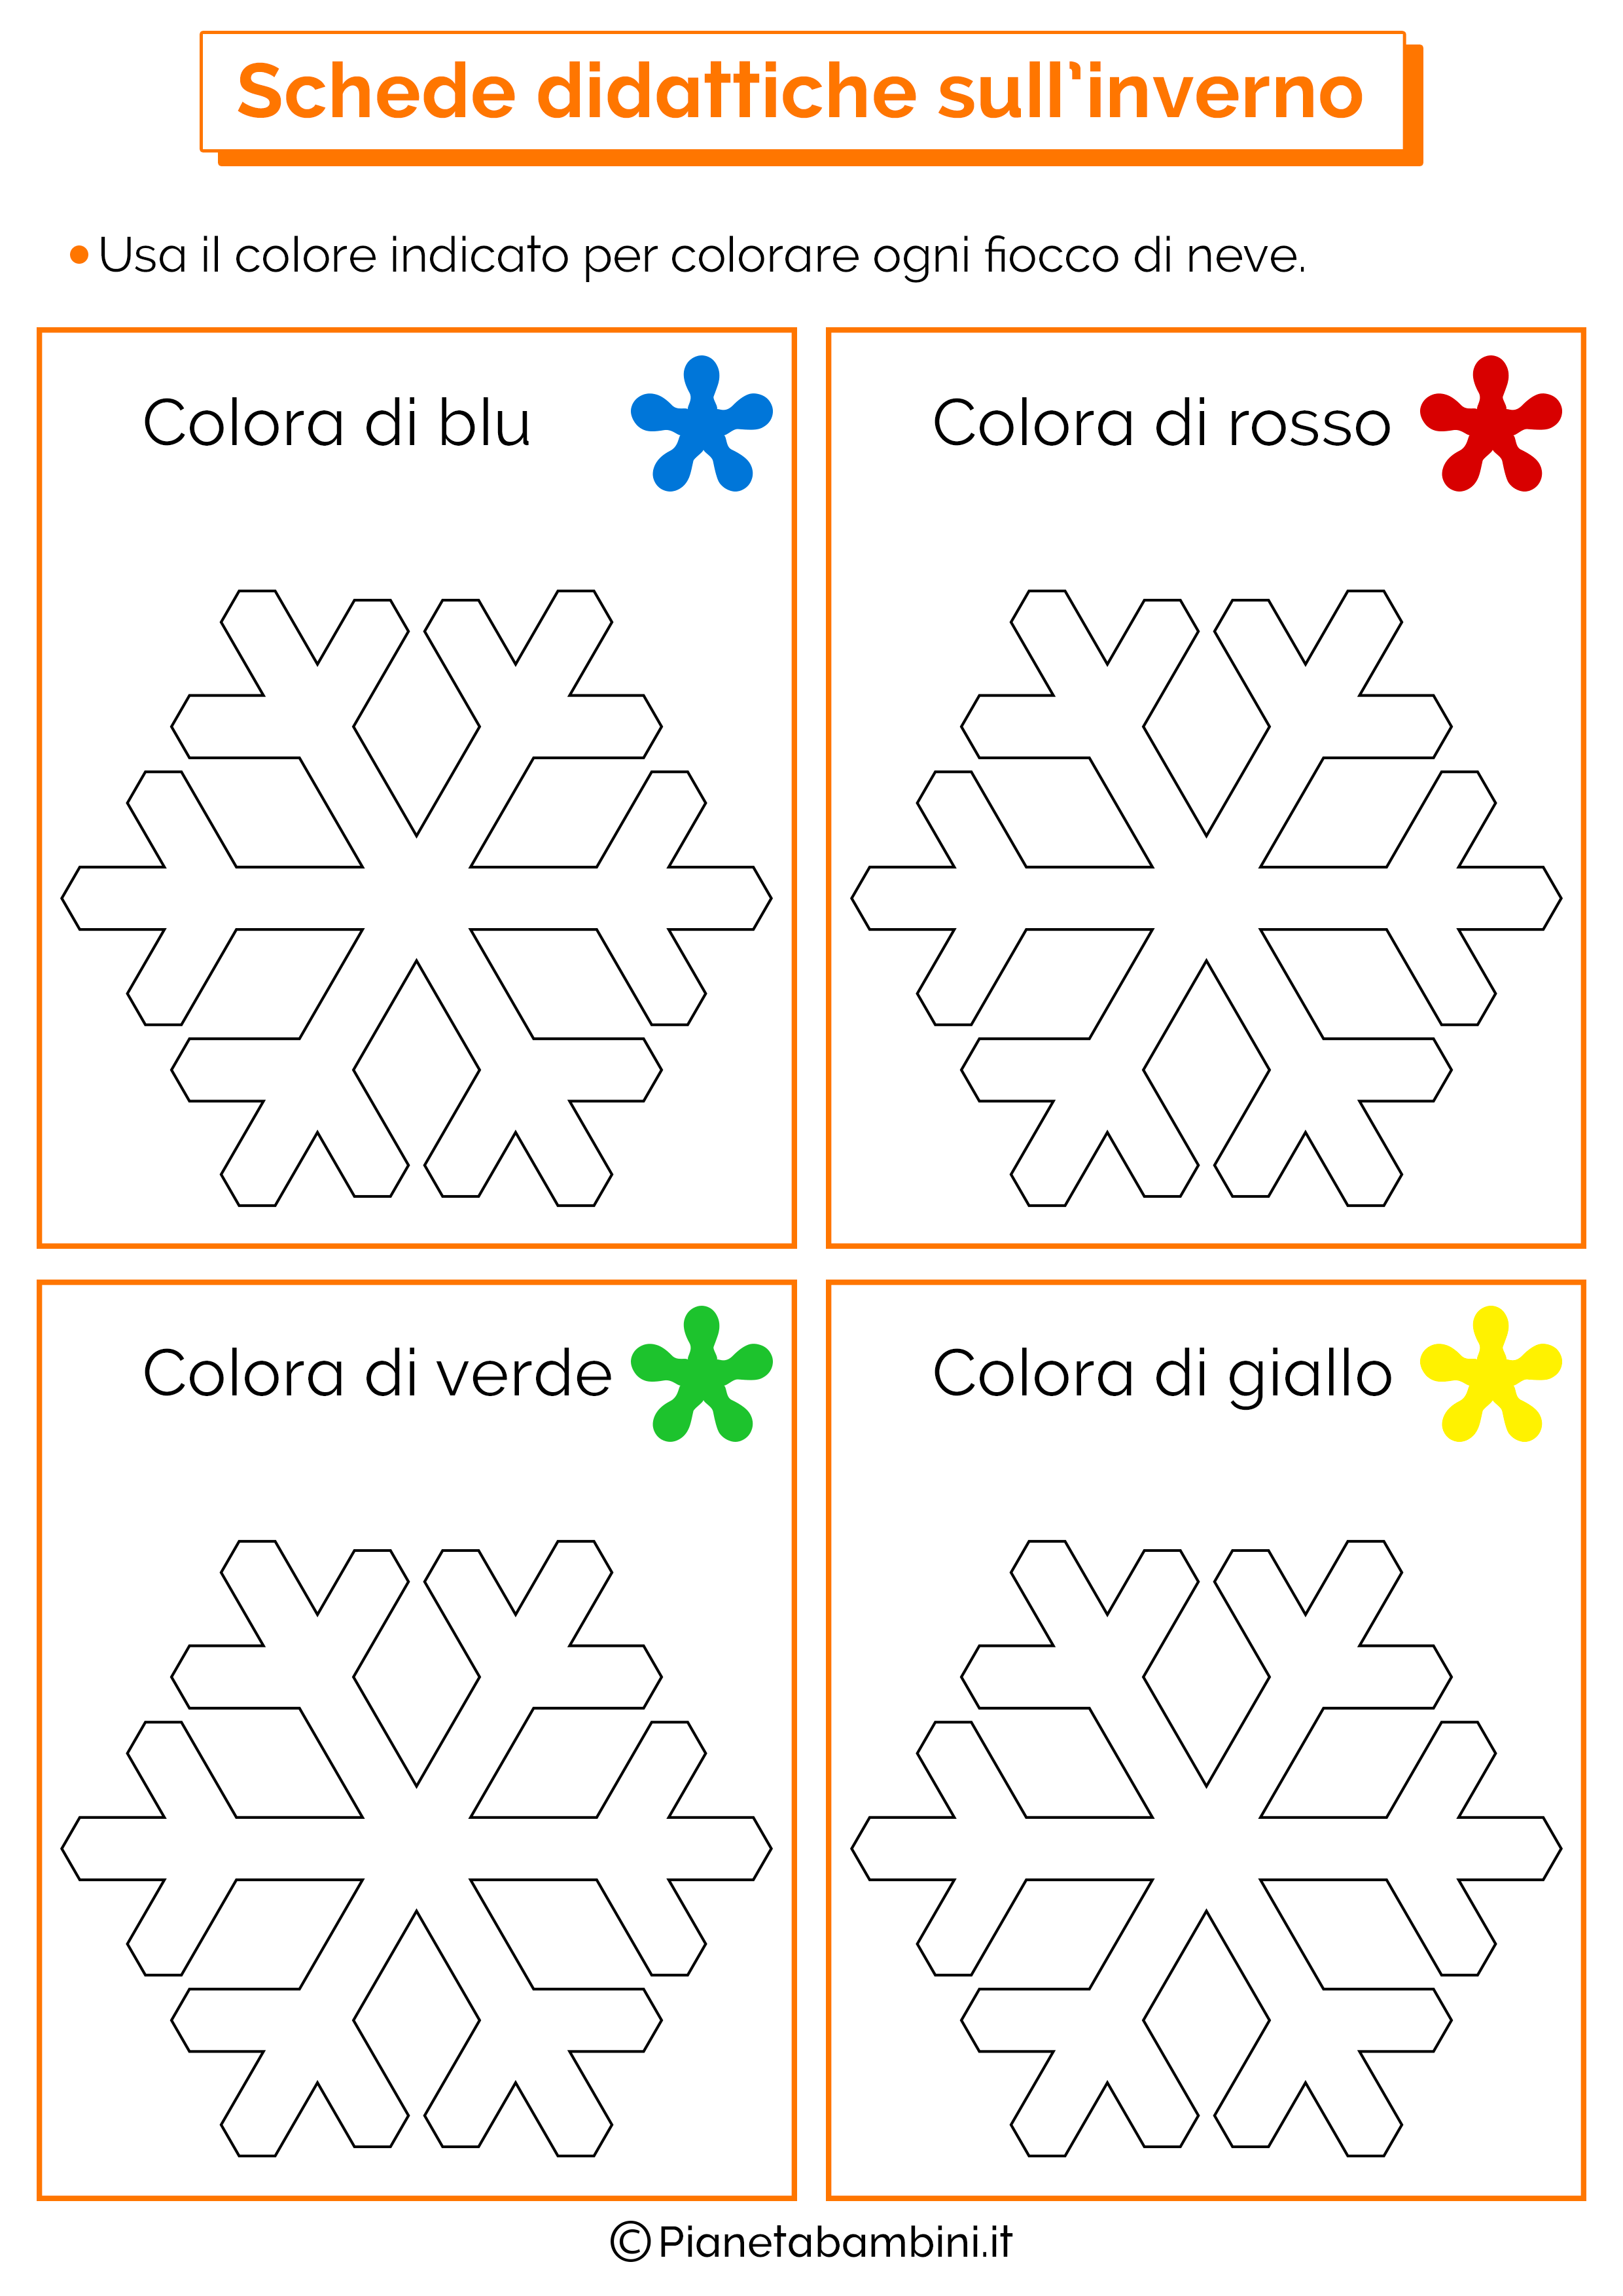 Incantevole disegni da colorare sull inverno scuola dell for Schede didattiche scuola dell infanzia da stampare natale